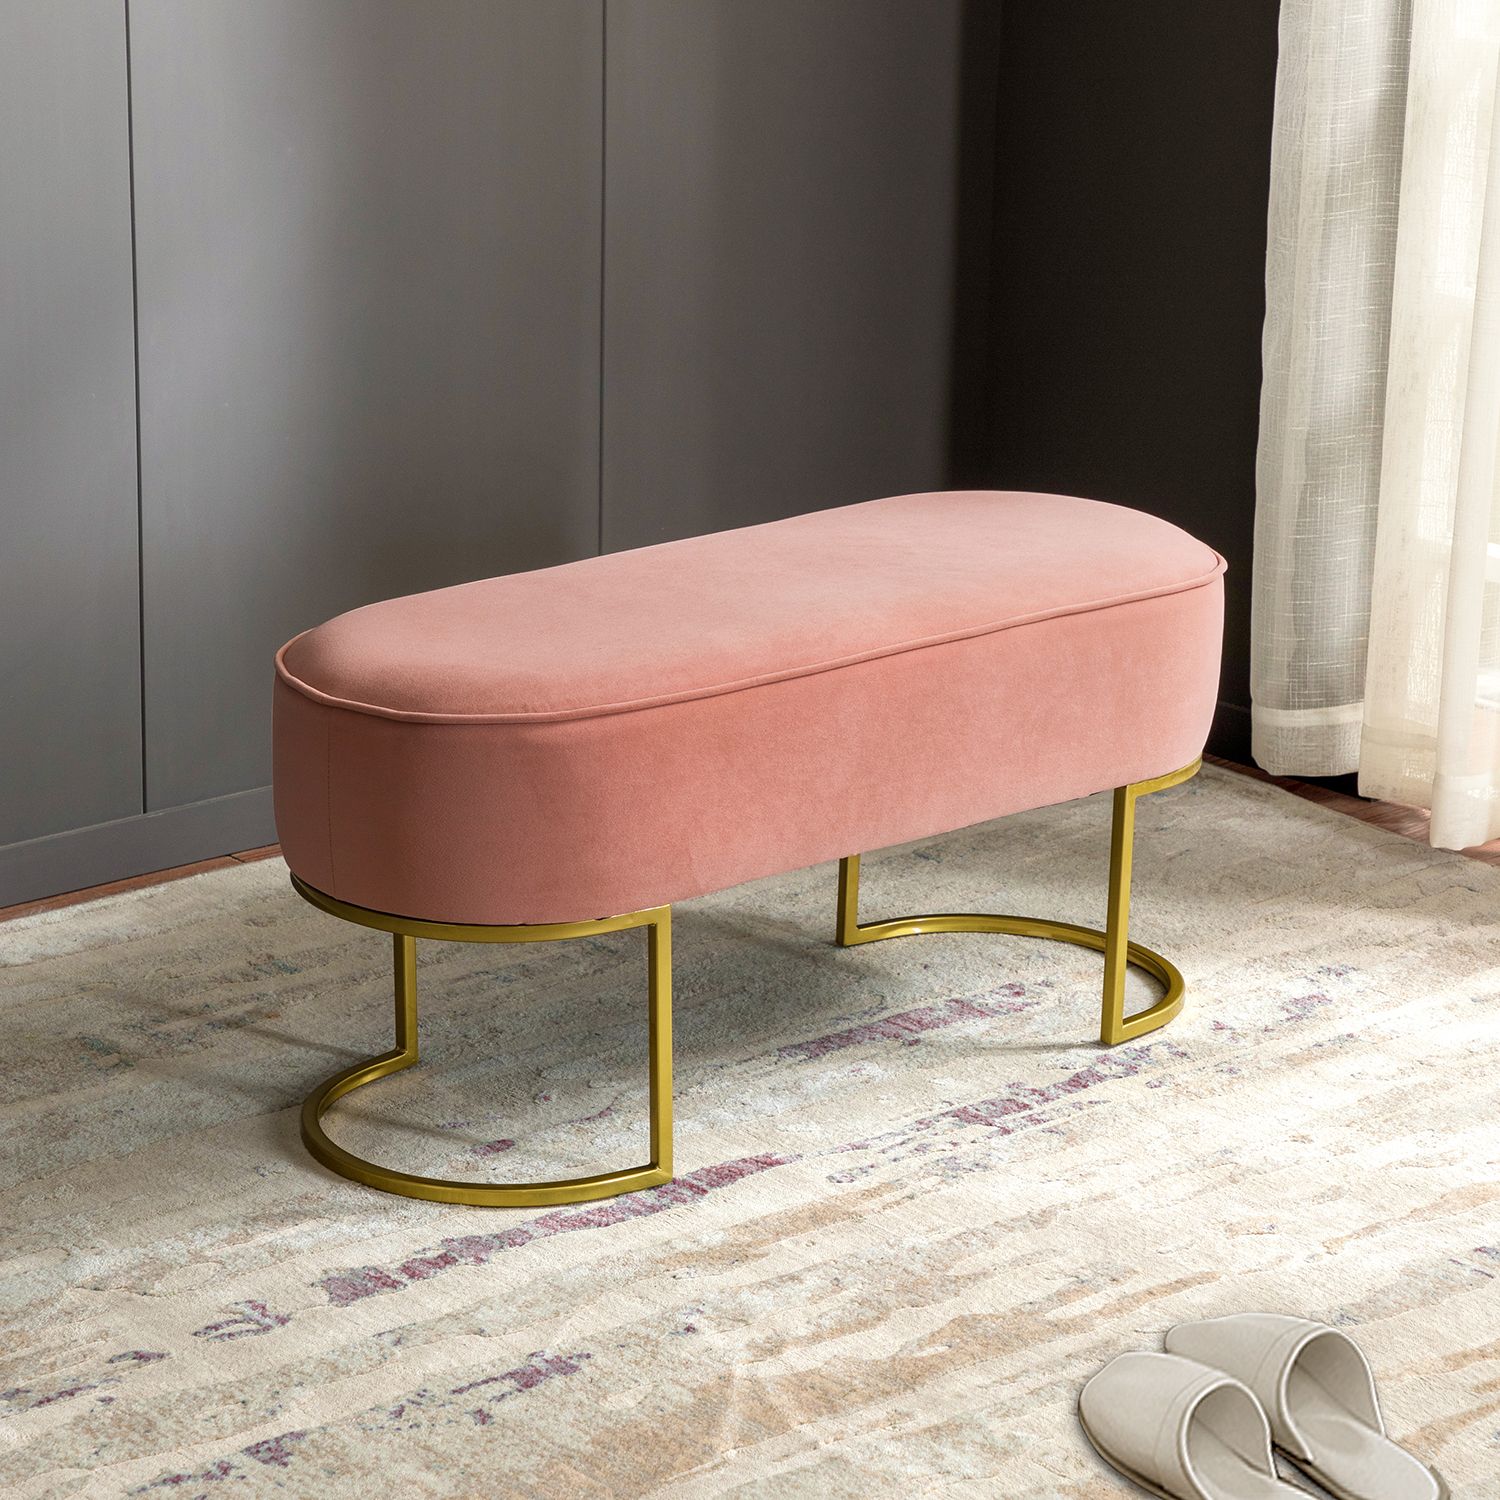 ARTFUL LIVING DESIGN 39.4" Upholstered Velvet Ottoman Bench for Bedroom with Horseshoe-shaped Met... | Walmart (US)